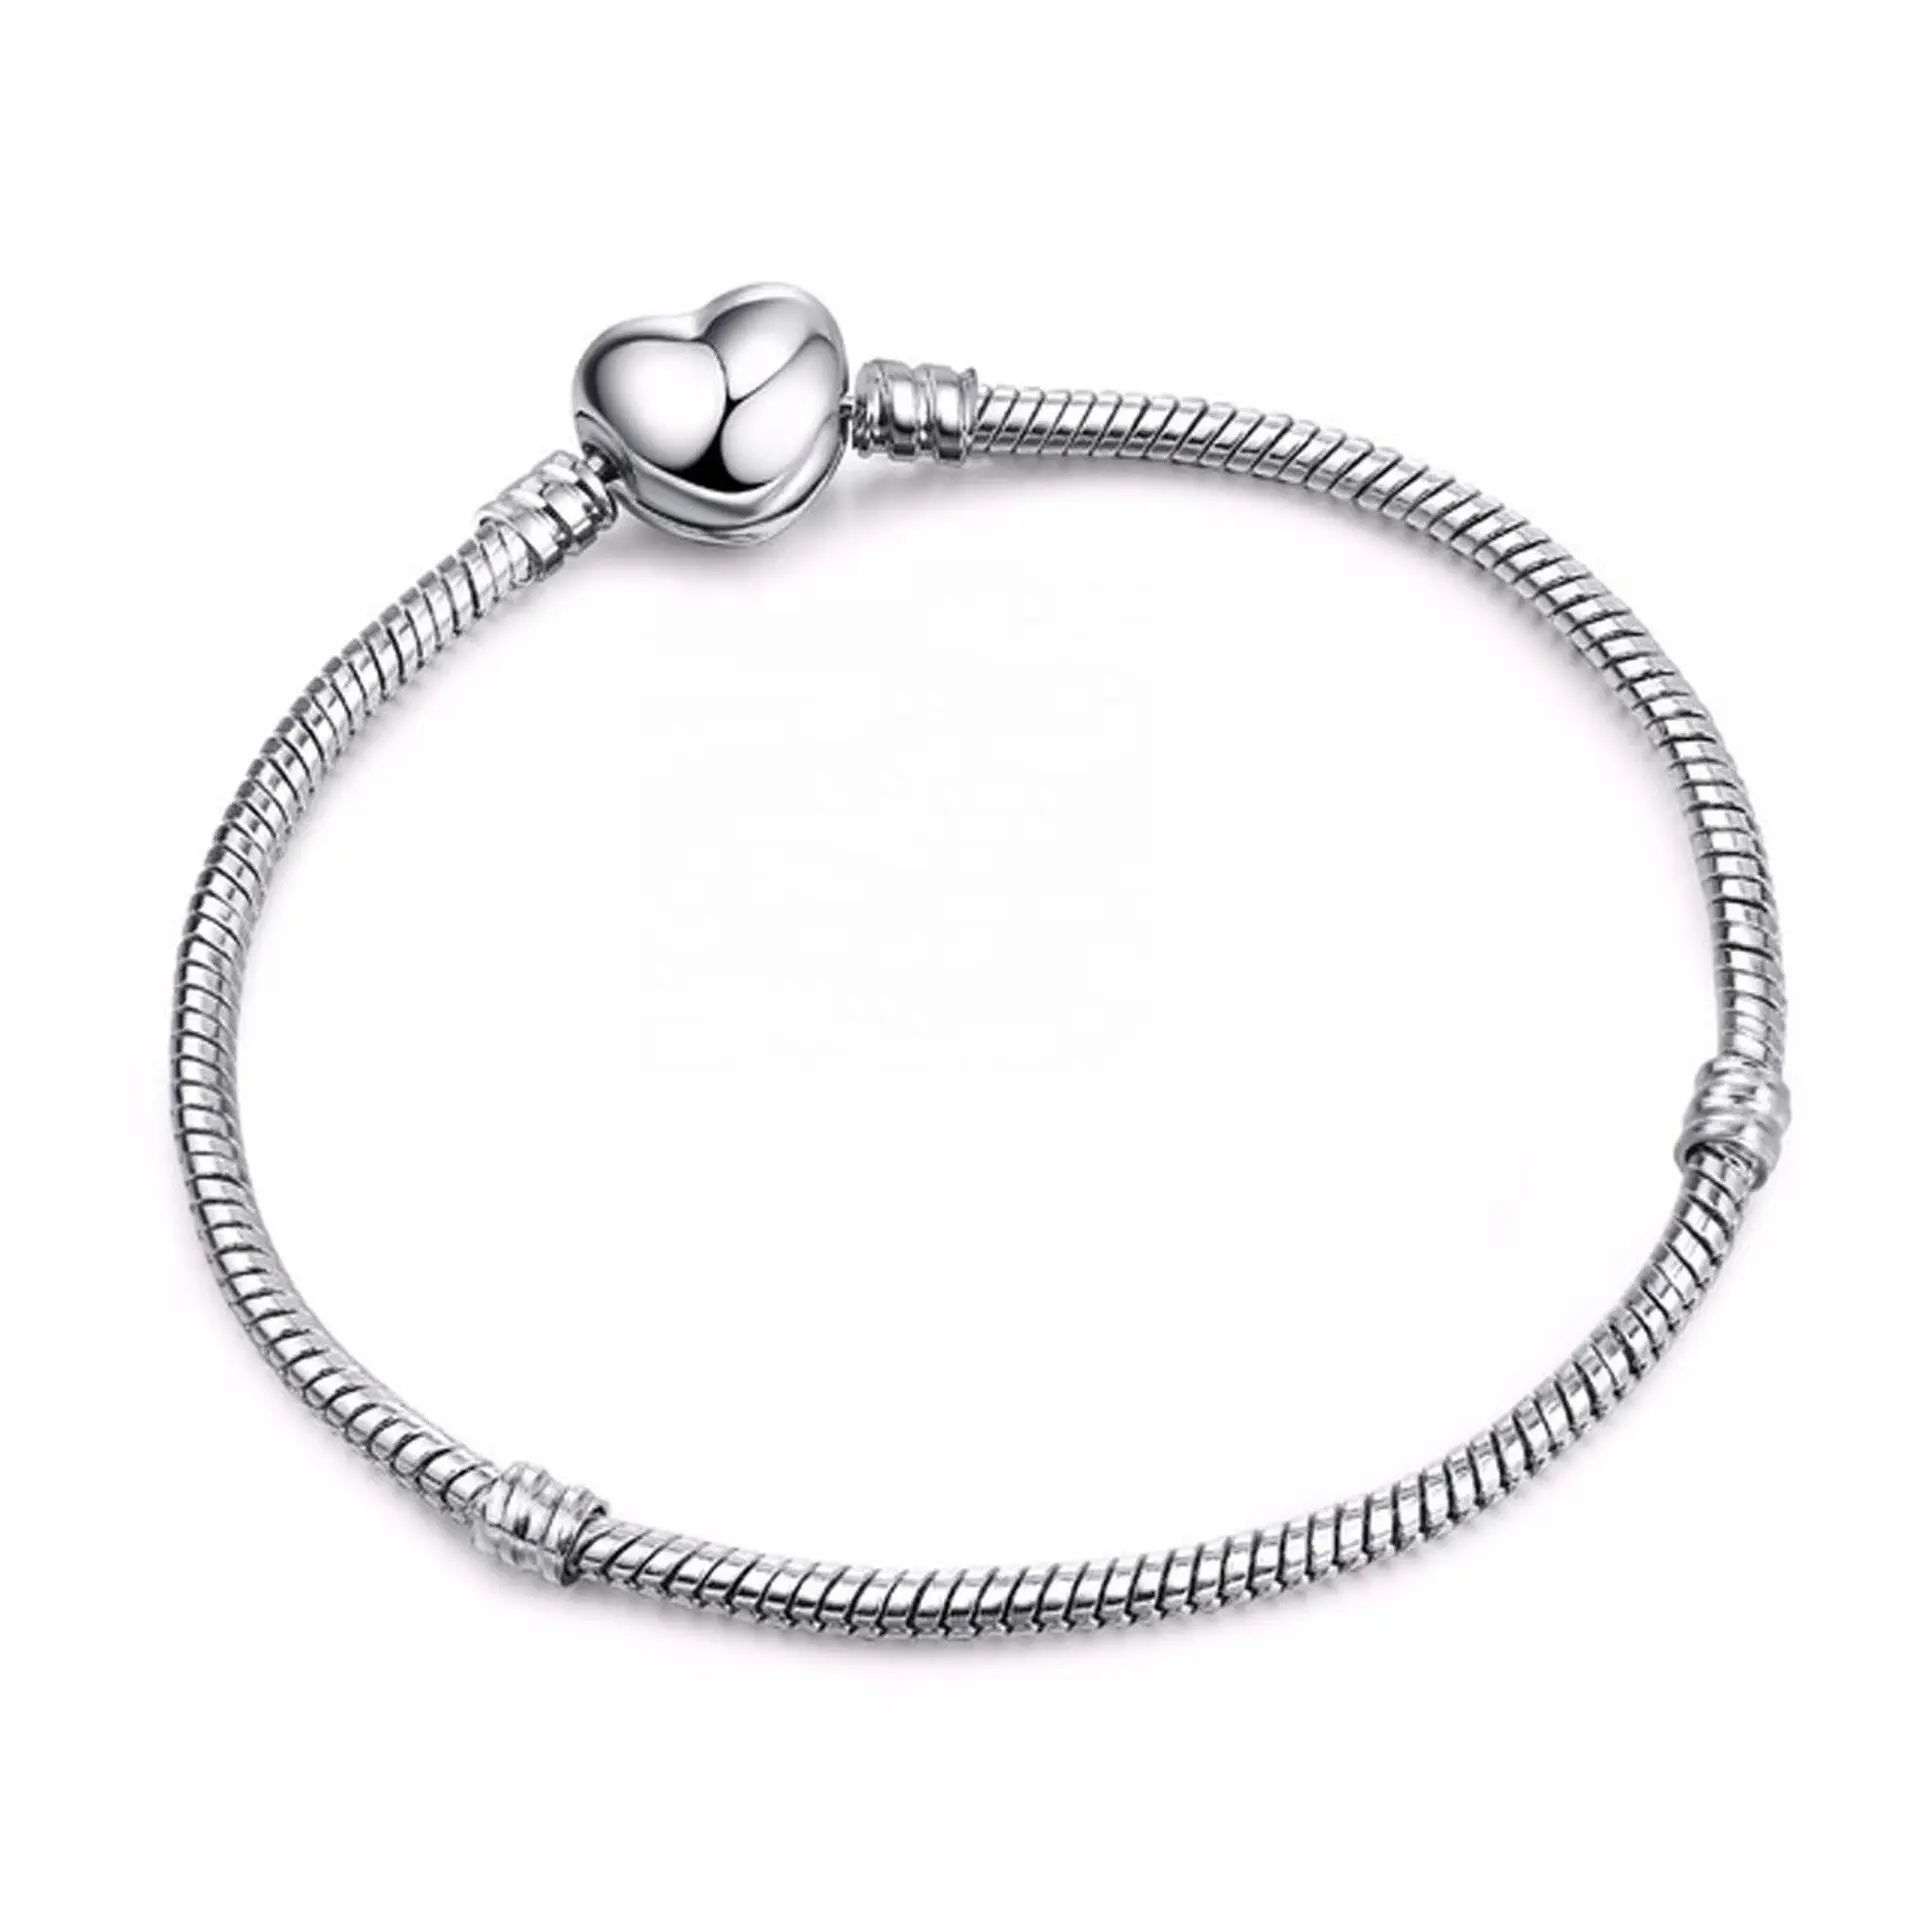 DIY 3mm ilk zincir Drop shipping gümüş kaplama yılan zincir kalp Charm bilezik & bileklik güzel bilezik takı kadın hediye